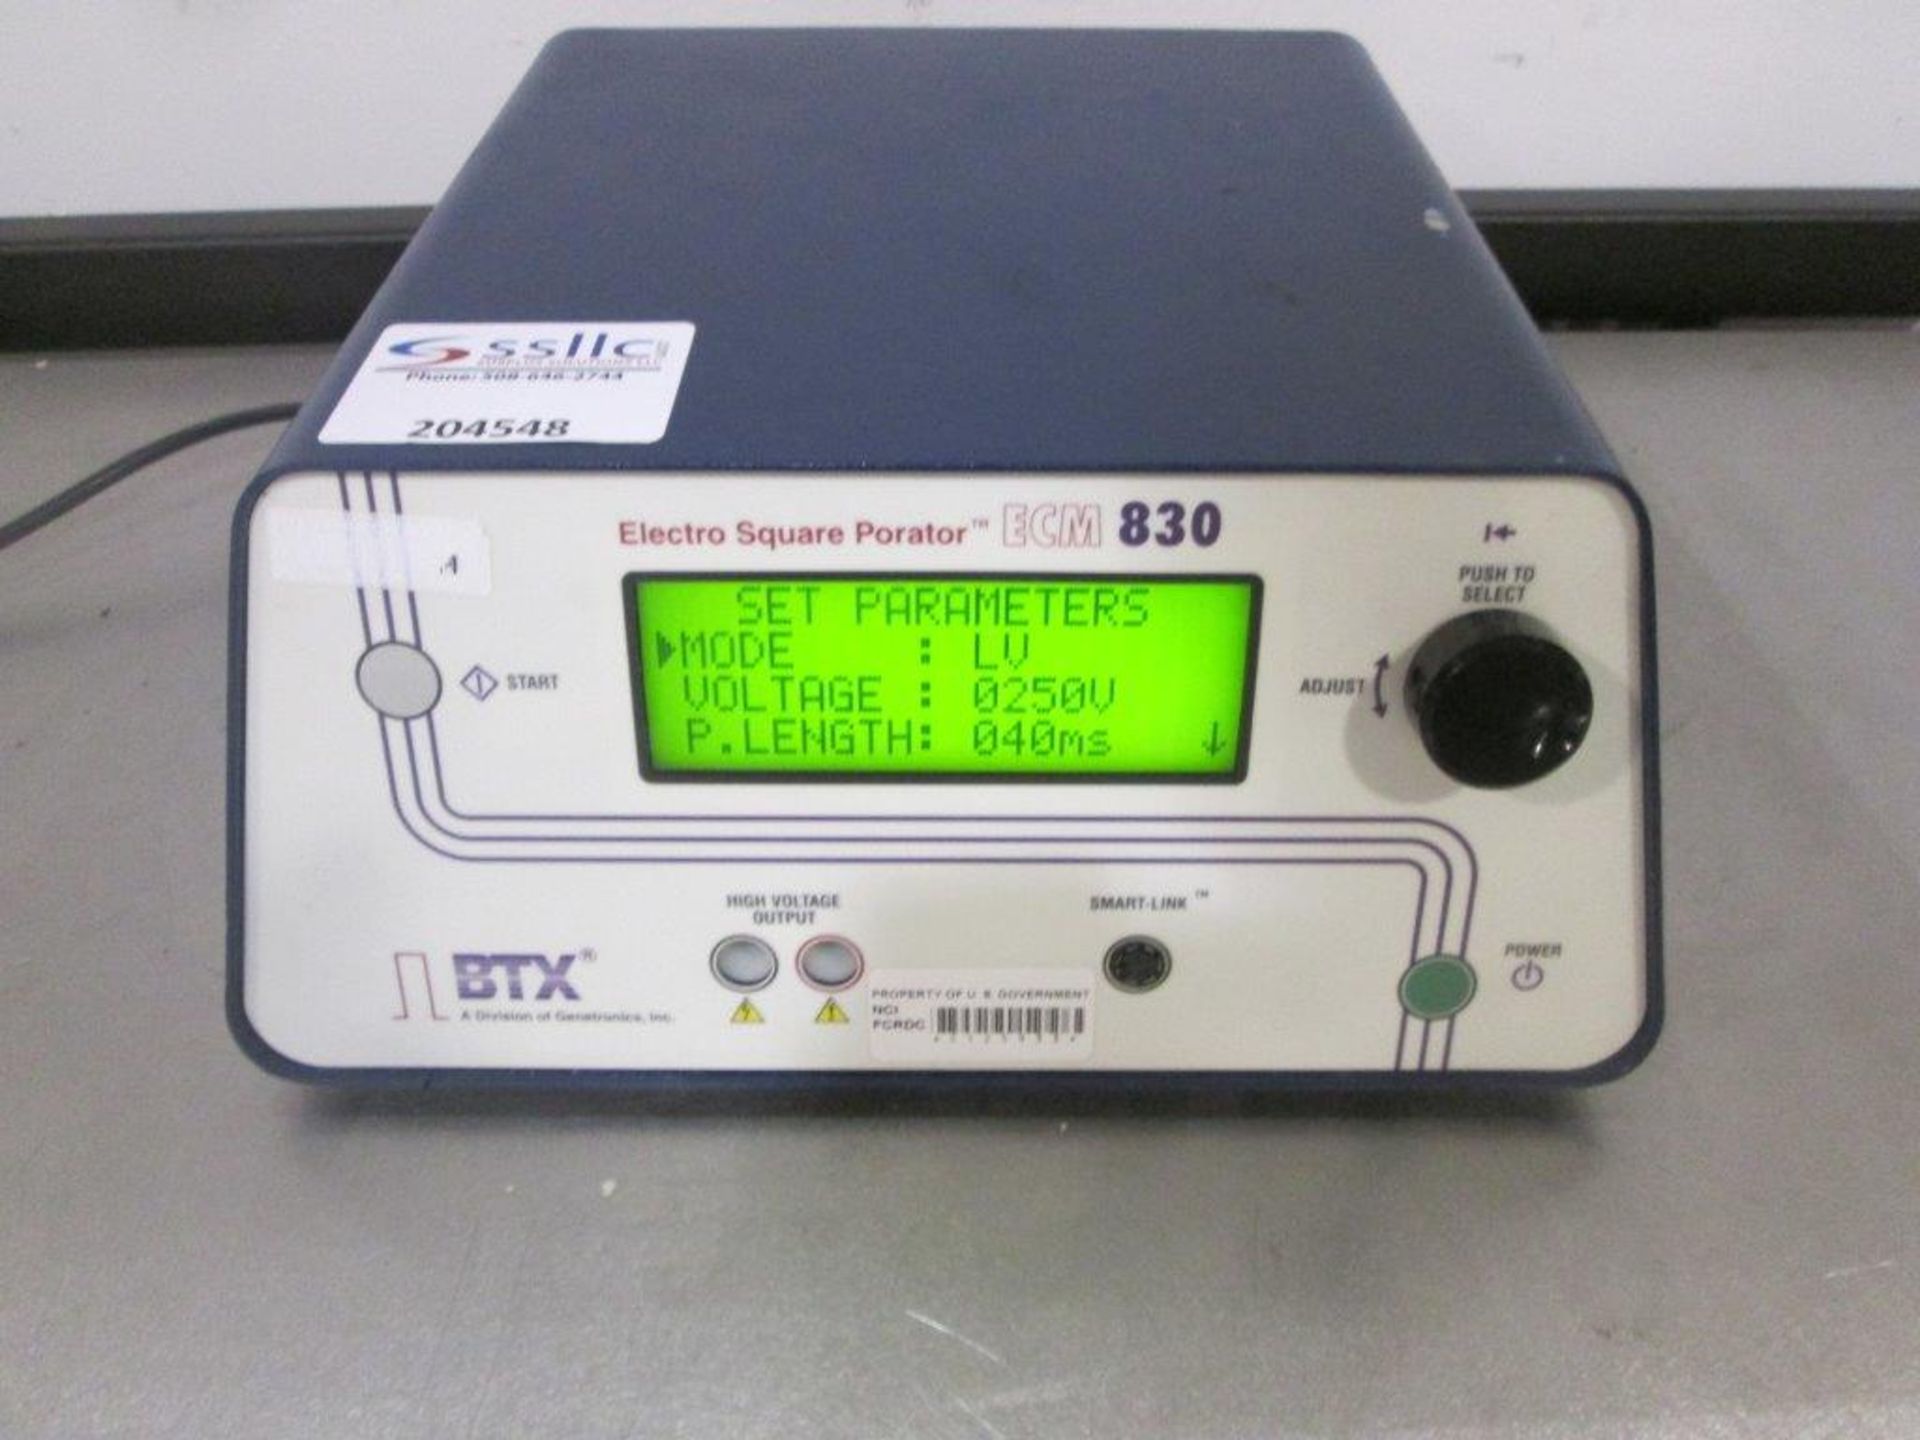 BTX ECM 830 Electro Square Porator